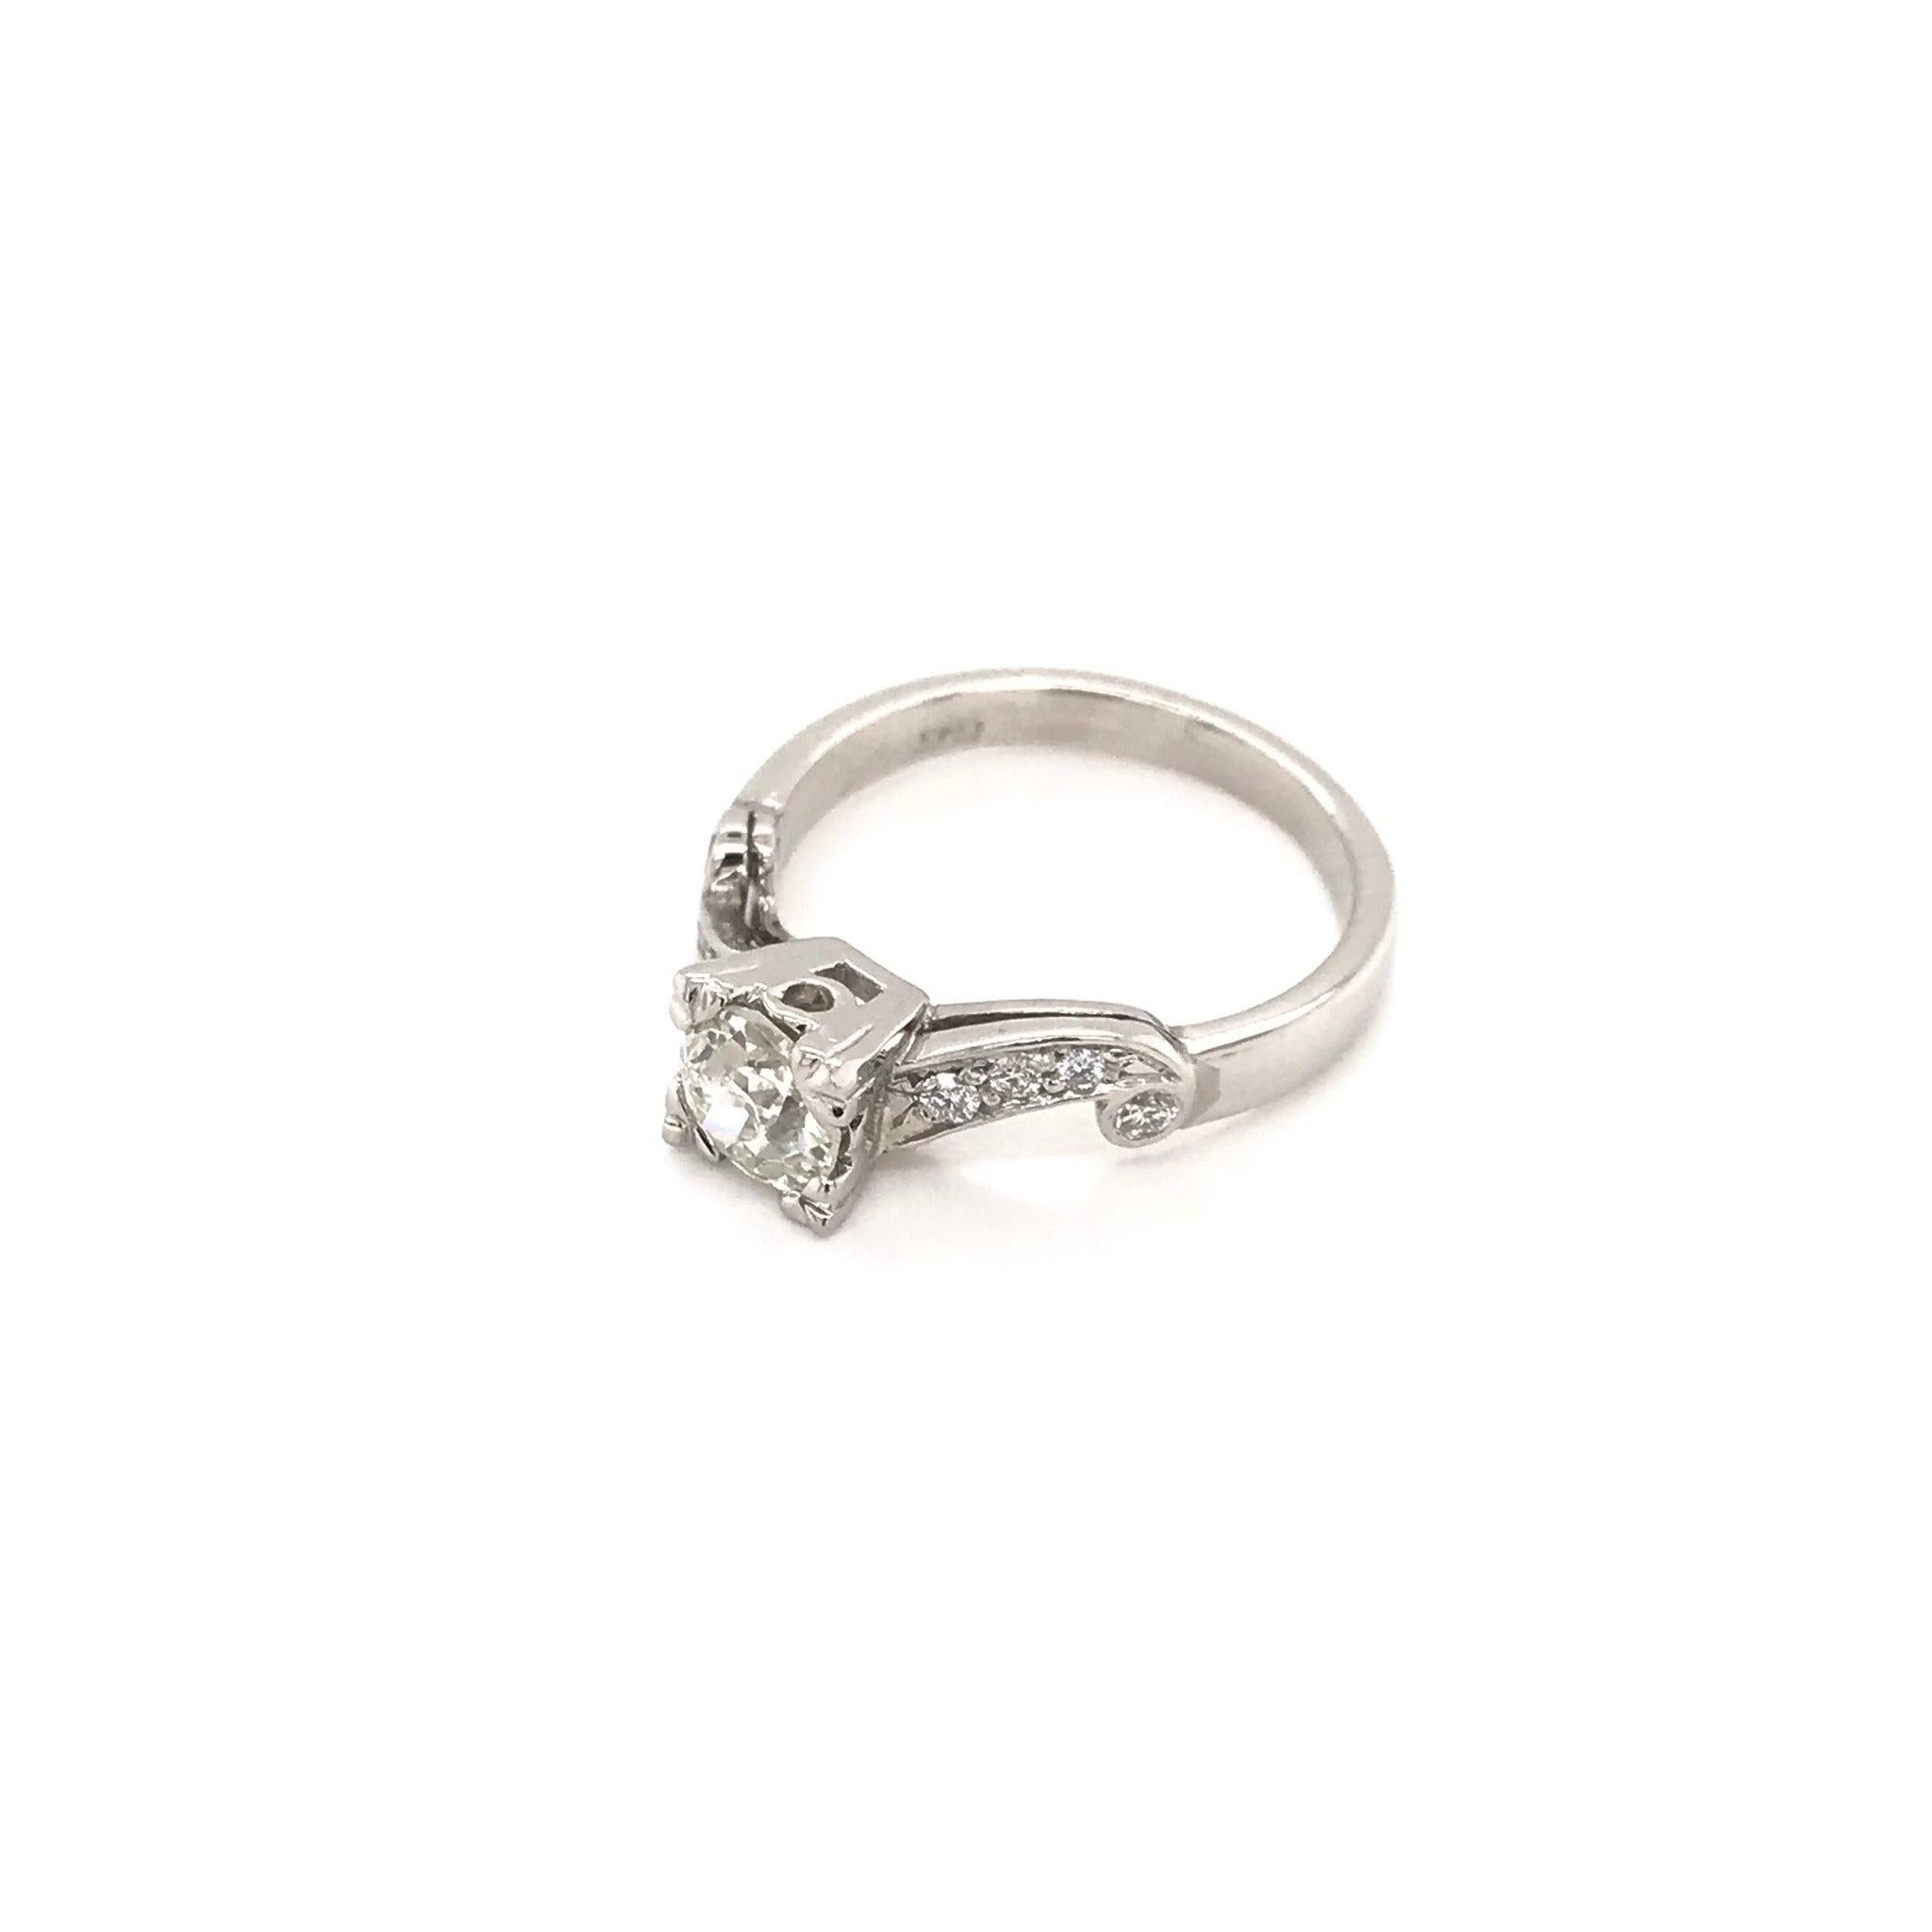 Dieser hübsche Diamantring wurde irgendwann in der Zeit des Mid-Century-Designs (1940-1960er Jahre) gefertigt. Der Ring ist mit einem wunderschönen Diamanten von 0,74 Karat besetzt. Der Diamant in der Mitte hat eine Farbe von etwa J und eine